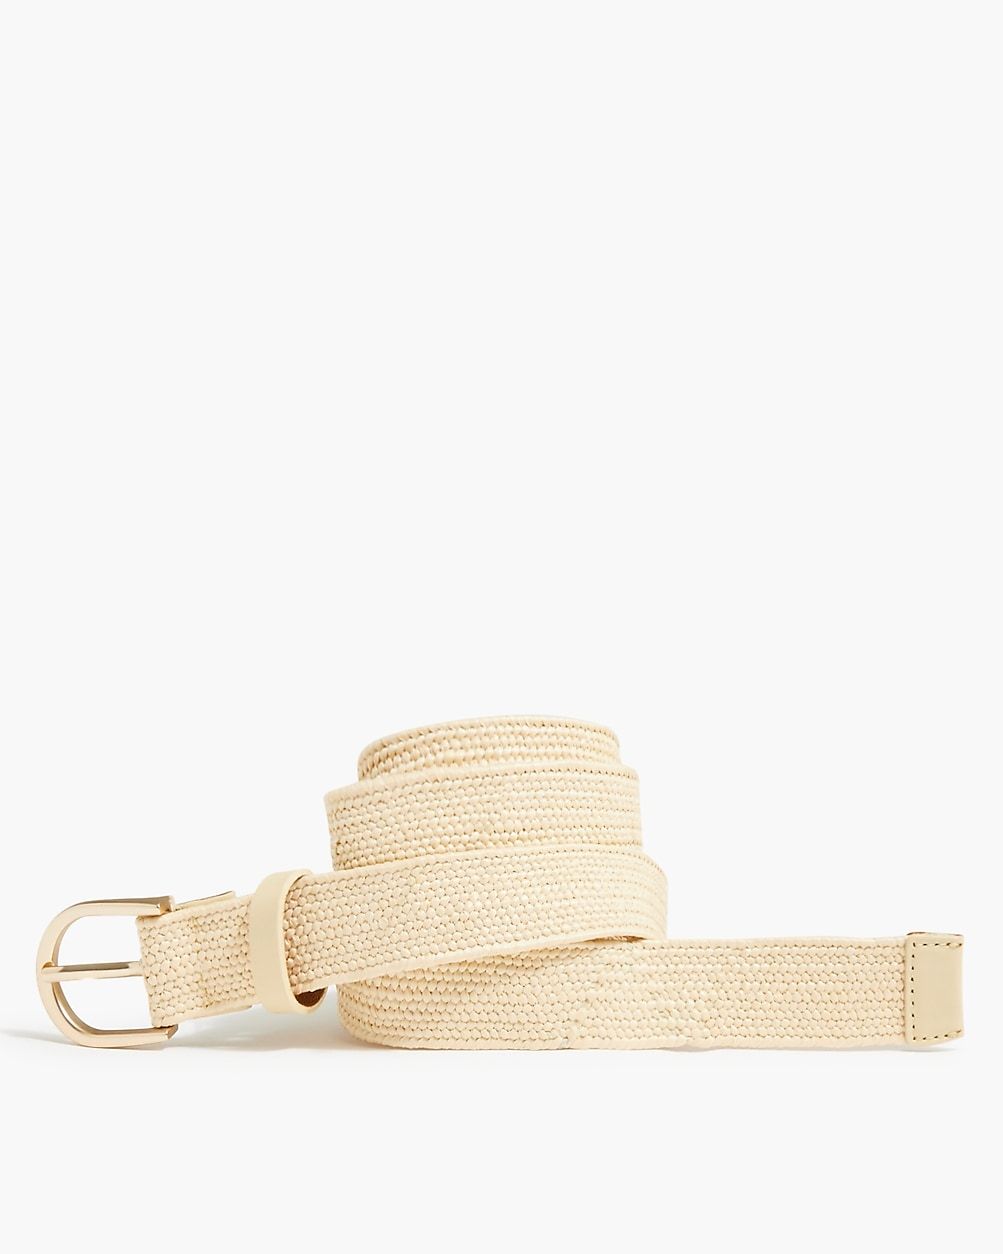 Stretchy slim straw waist belt | J.Crew Factory